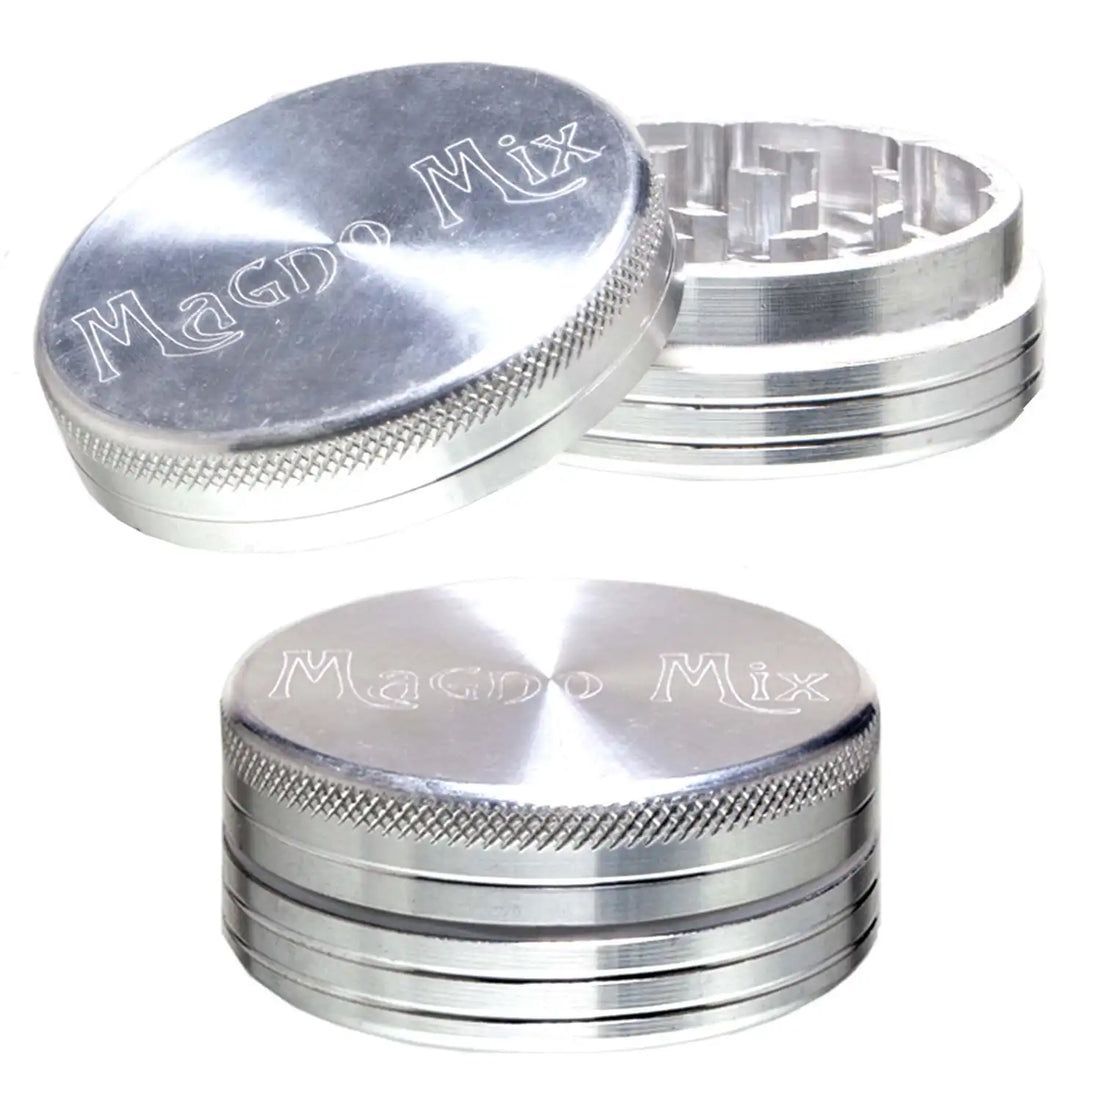 Magno Mix Grinder - Durchmesser: 50mm - 2-teilig - Silber